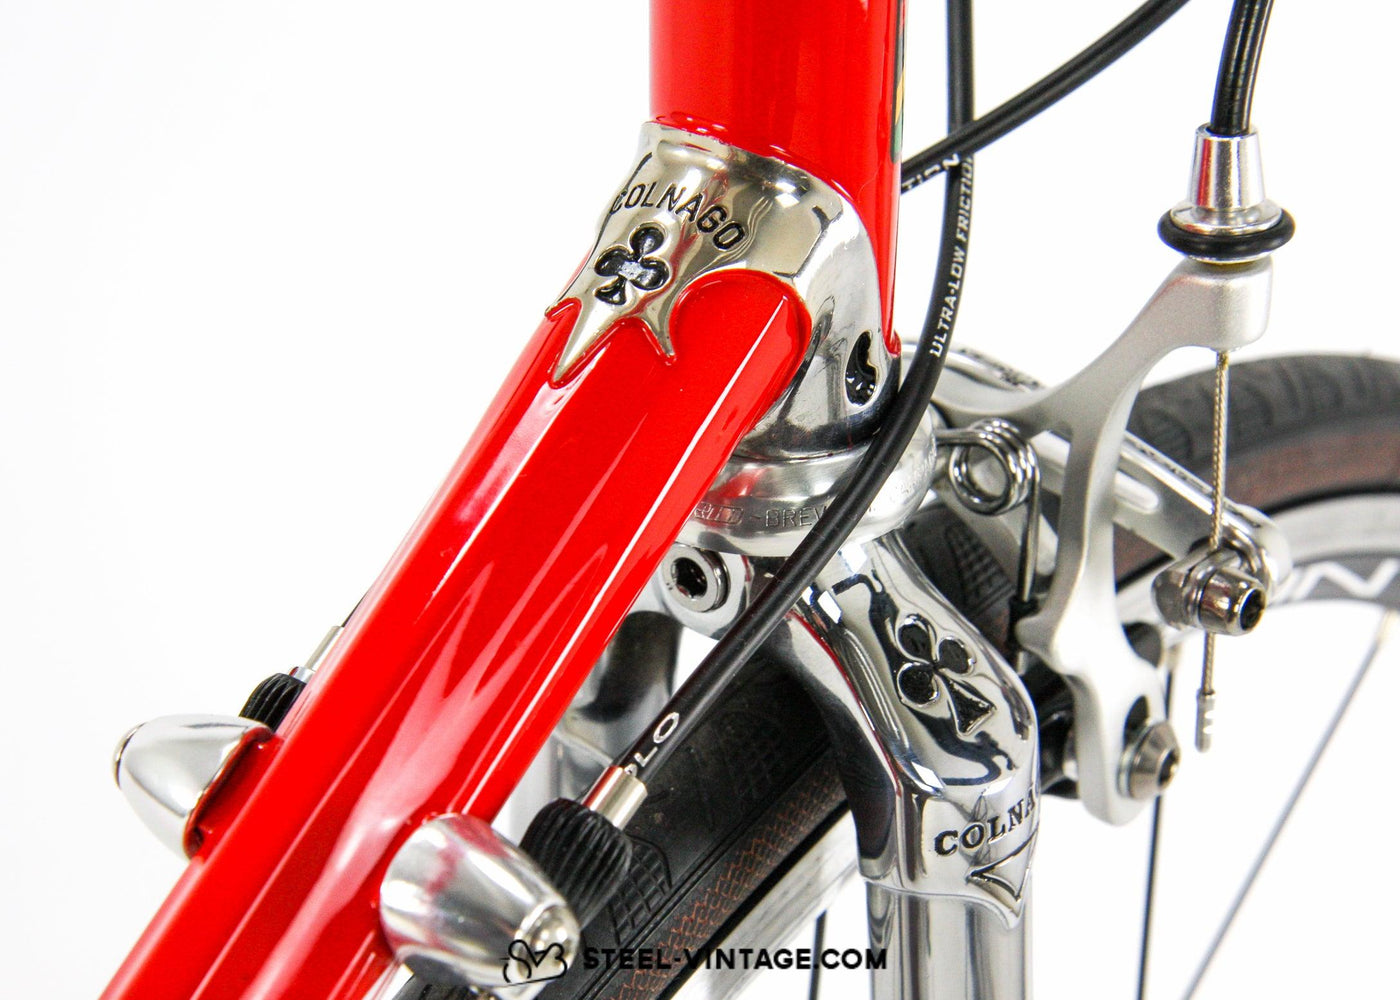 Colnago Master Piu Postmodern Road Bicycle - Steel Vintage Bikes